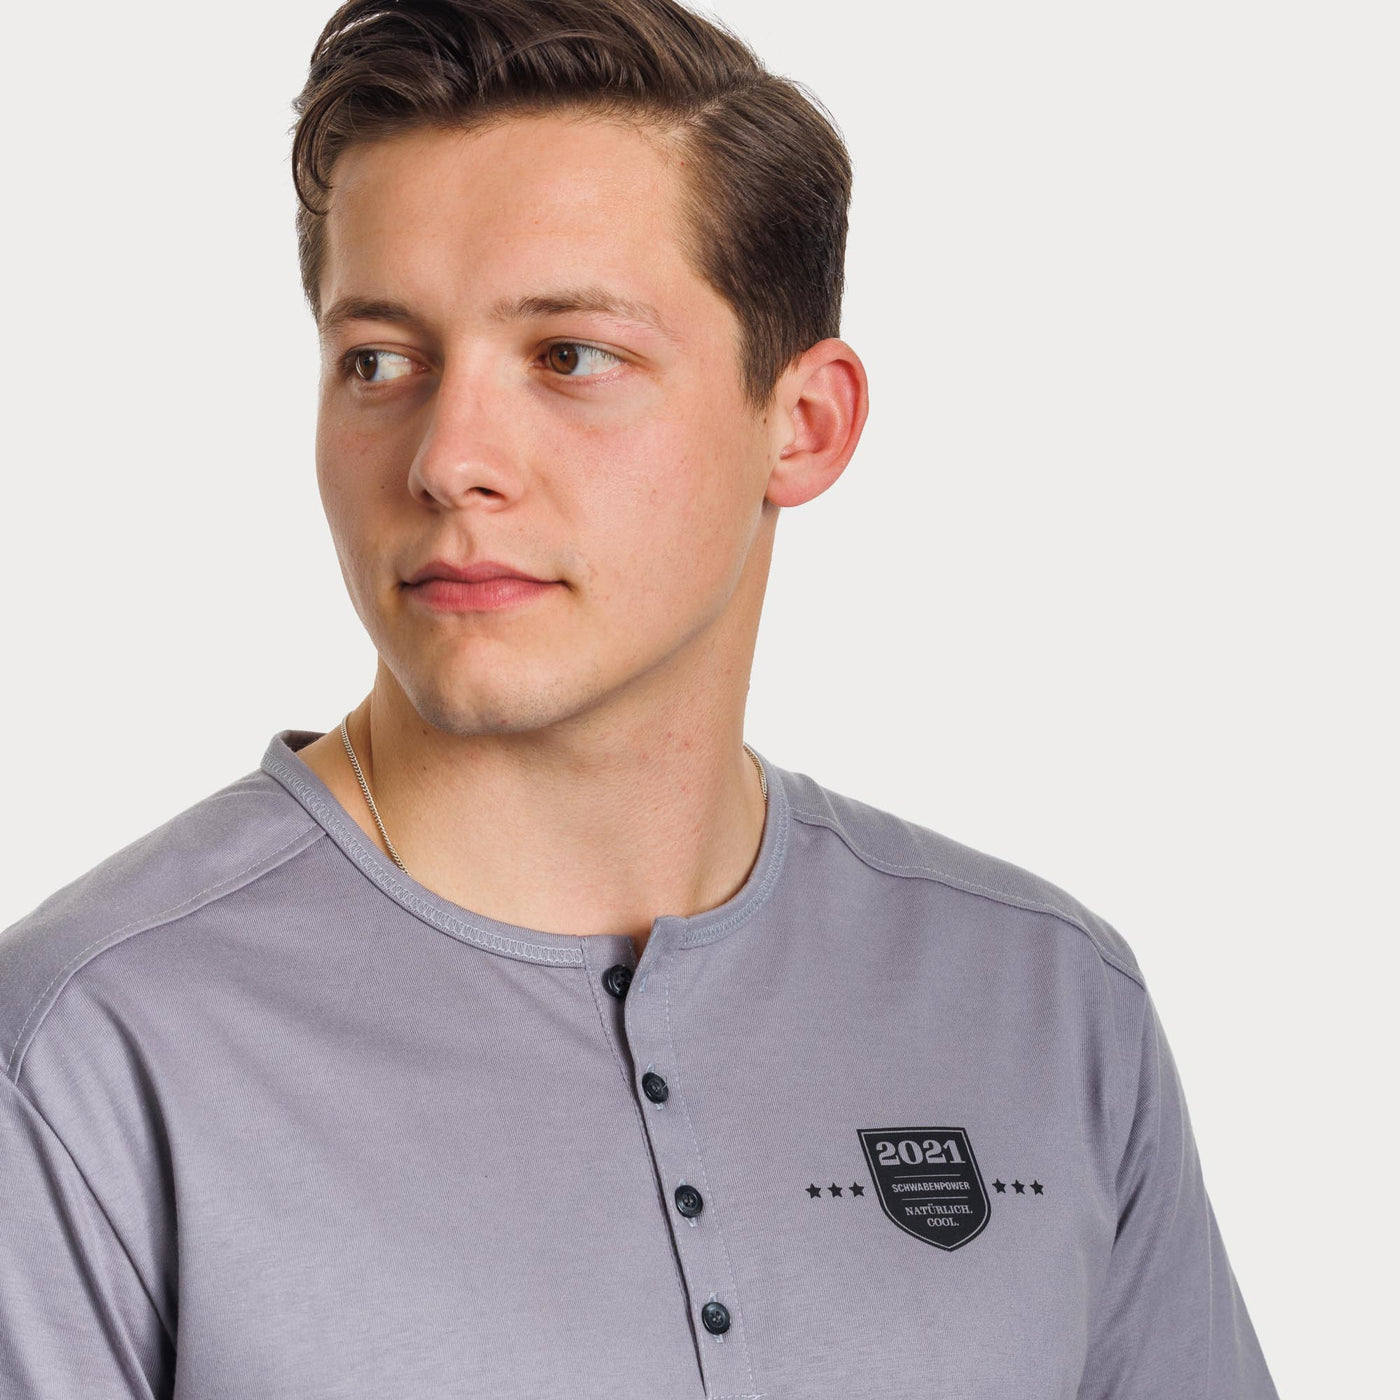 Herren T-Shirt, grau, mit Knopfleiste, Wappen 2021